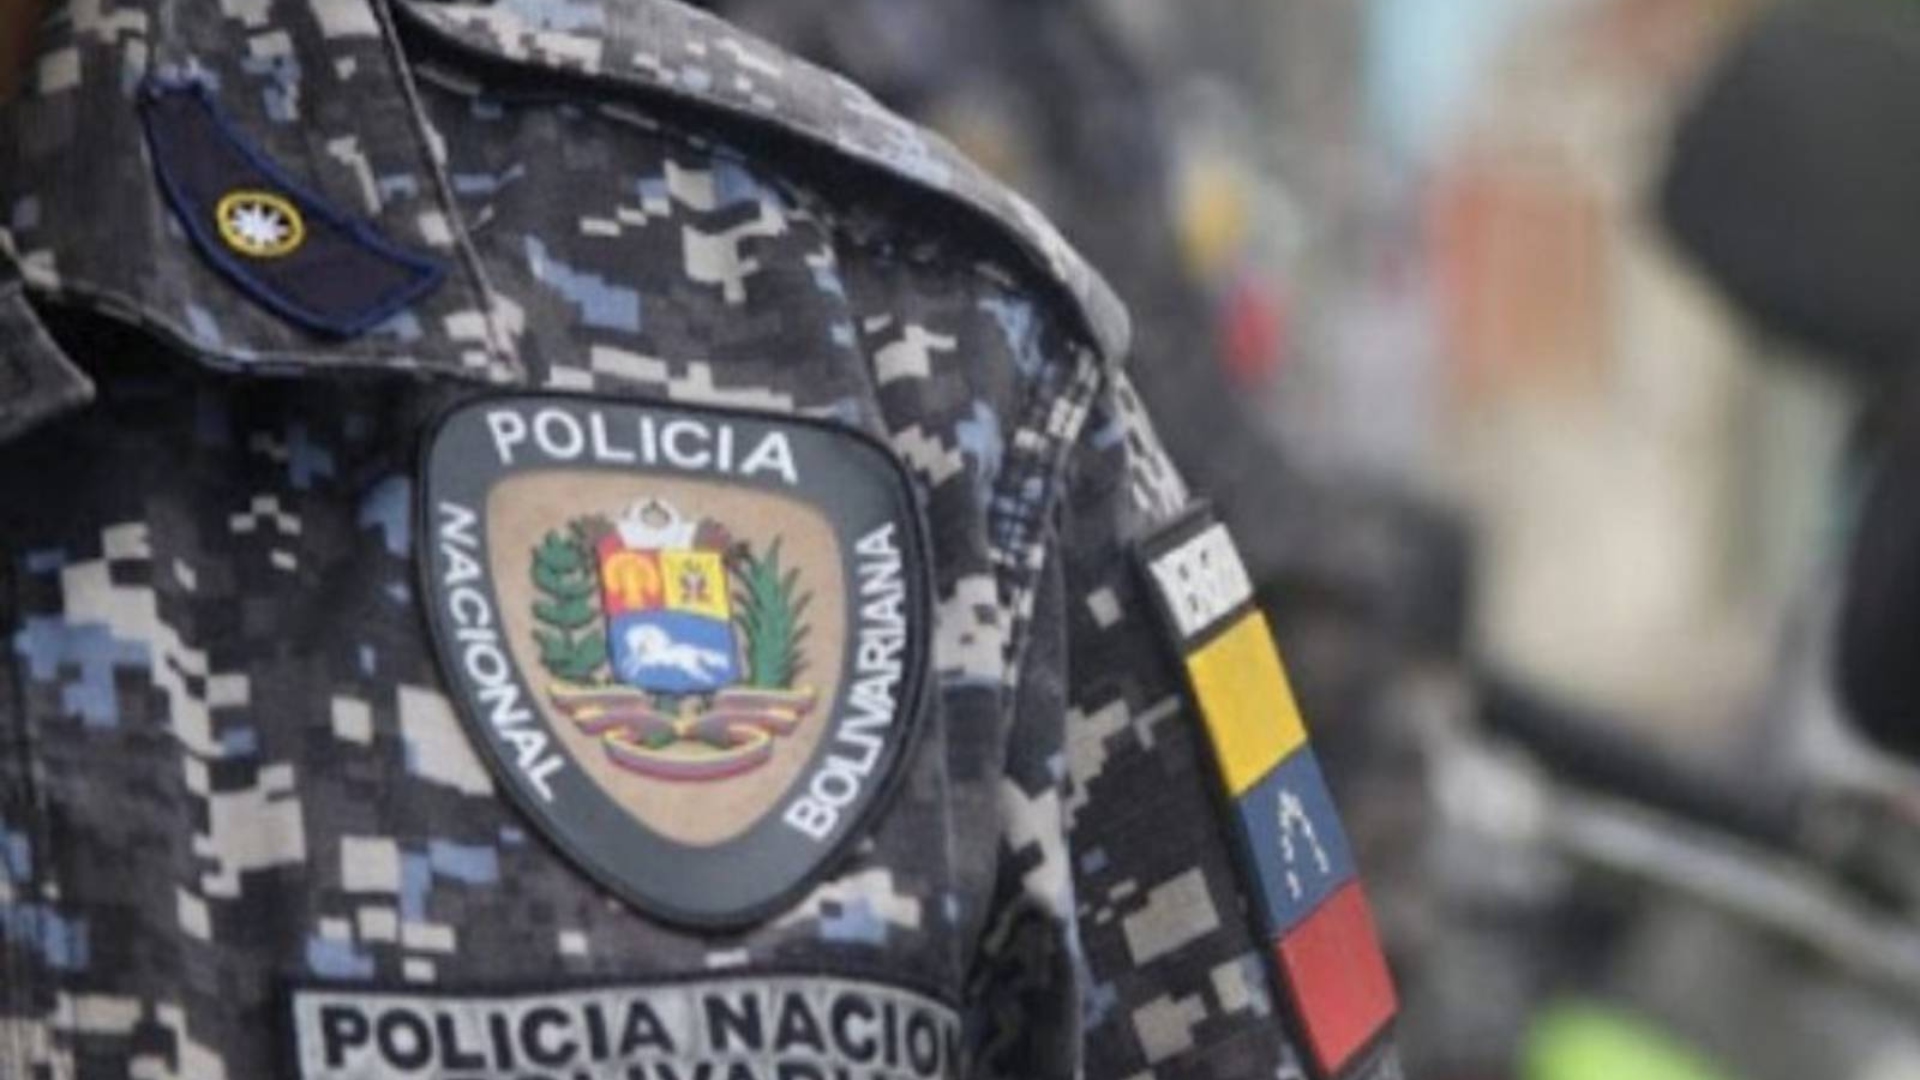 PNB lamentó muerte de adolescente en Carapita y ordenó una investigación al respecto